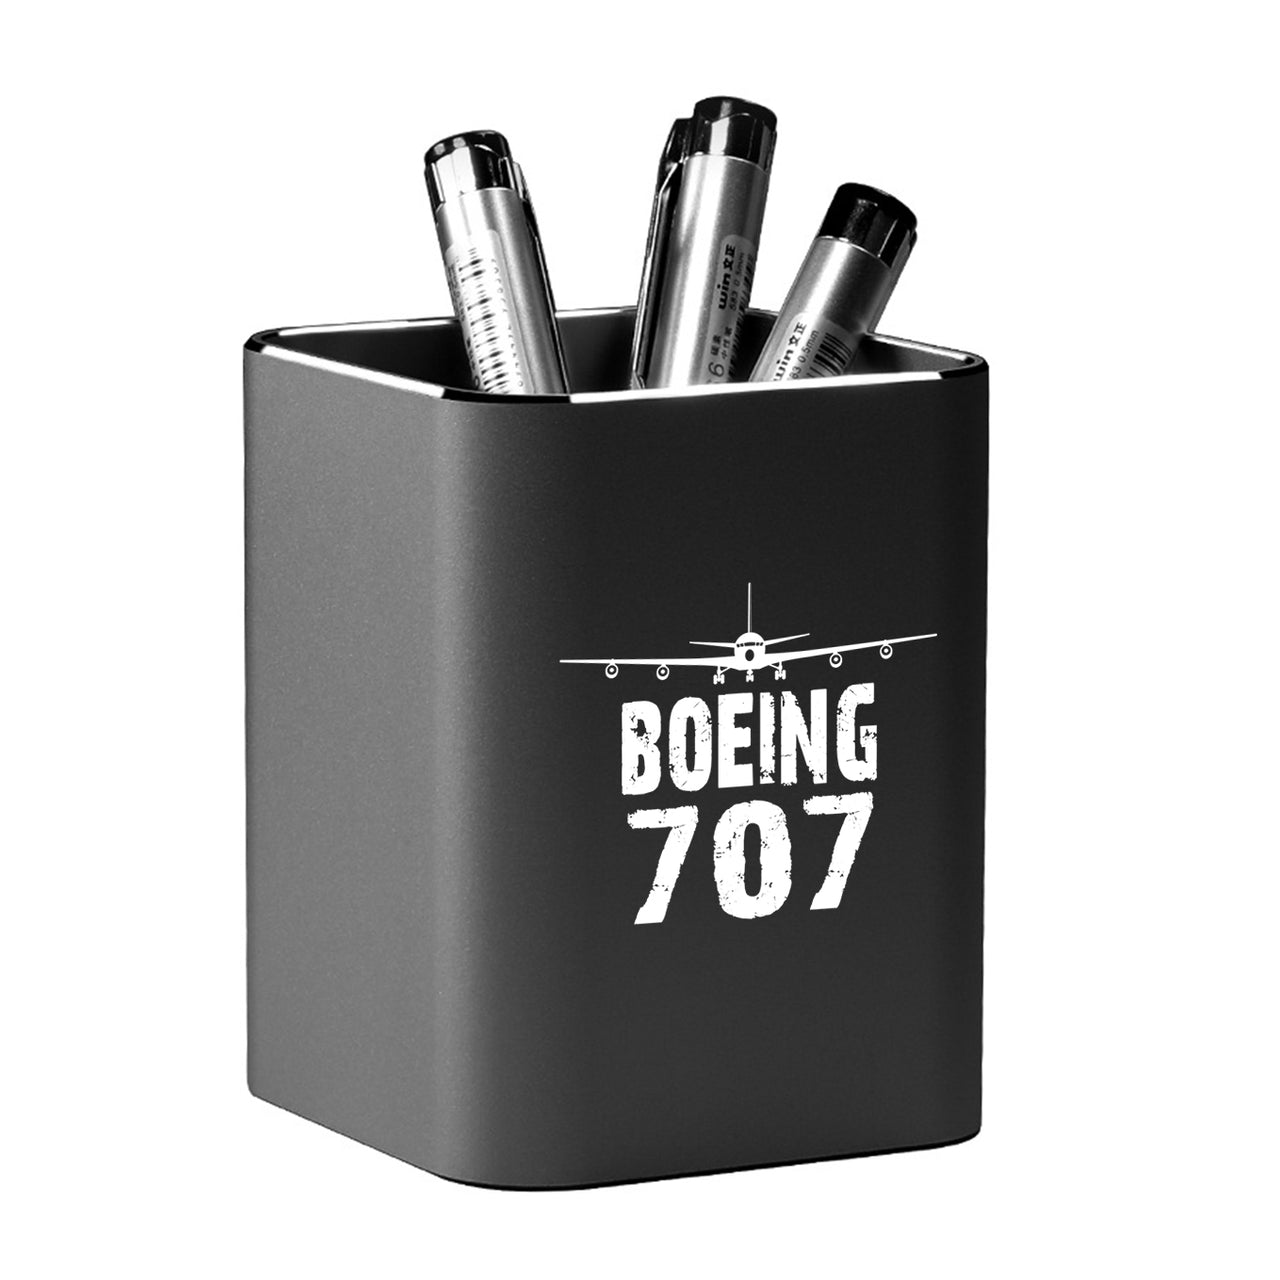 Boeing 707 & Plane Designed Aluminium Alloy Pen Holders